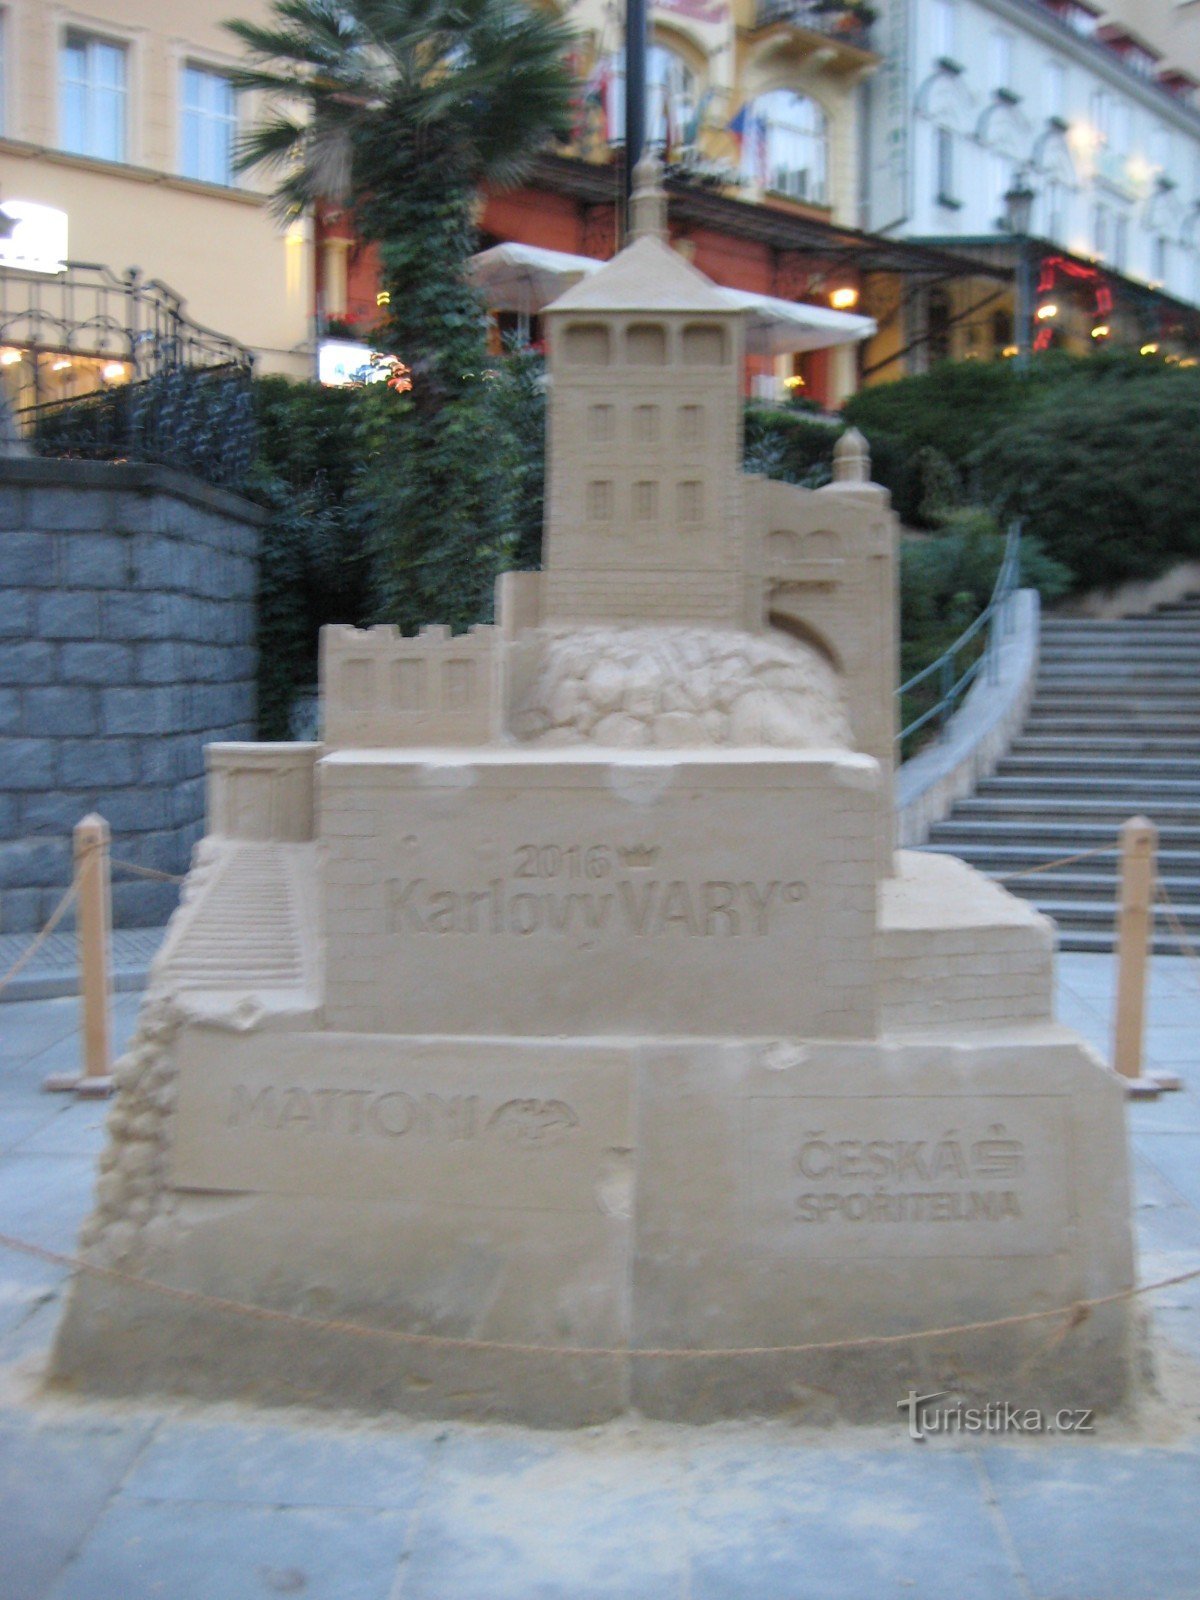 Tác phẩm điêu khắc trên cát: Tháp lâu đài ở Karlovy Vary